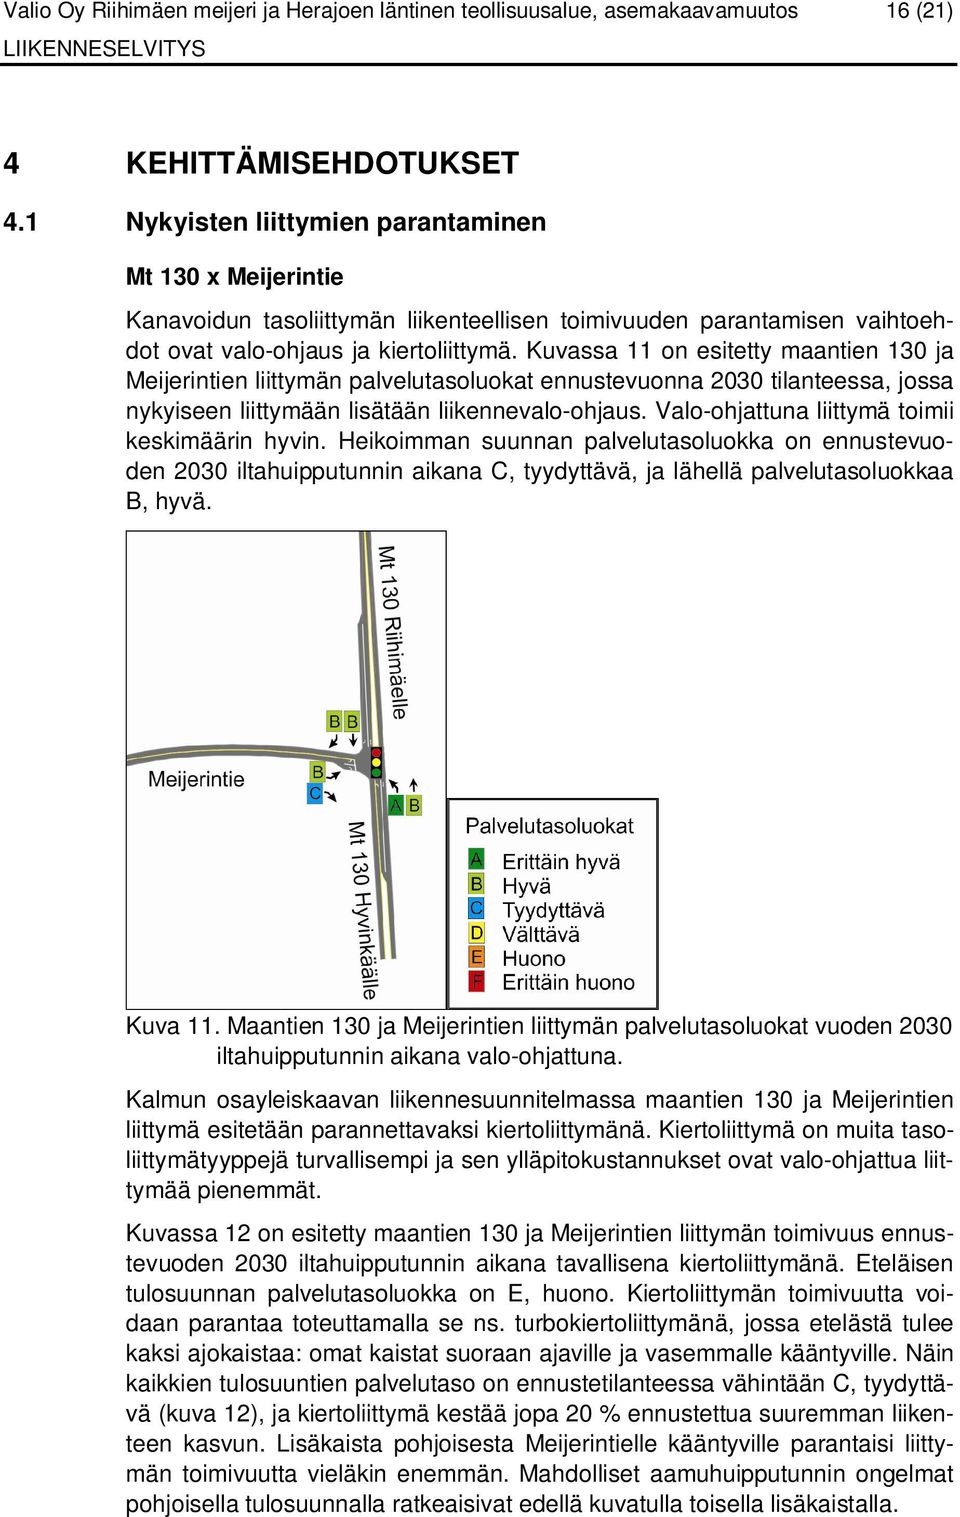 Kuvassa 11 on esitetty maantien 130 ja Meijerintien liittymän palvelutasoluokat ennustevuonna 2030 tilanteessa, jossa nykyiseen liittymään lisätään liikennevalo-ohjaus.